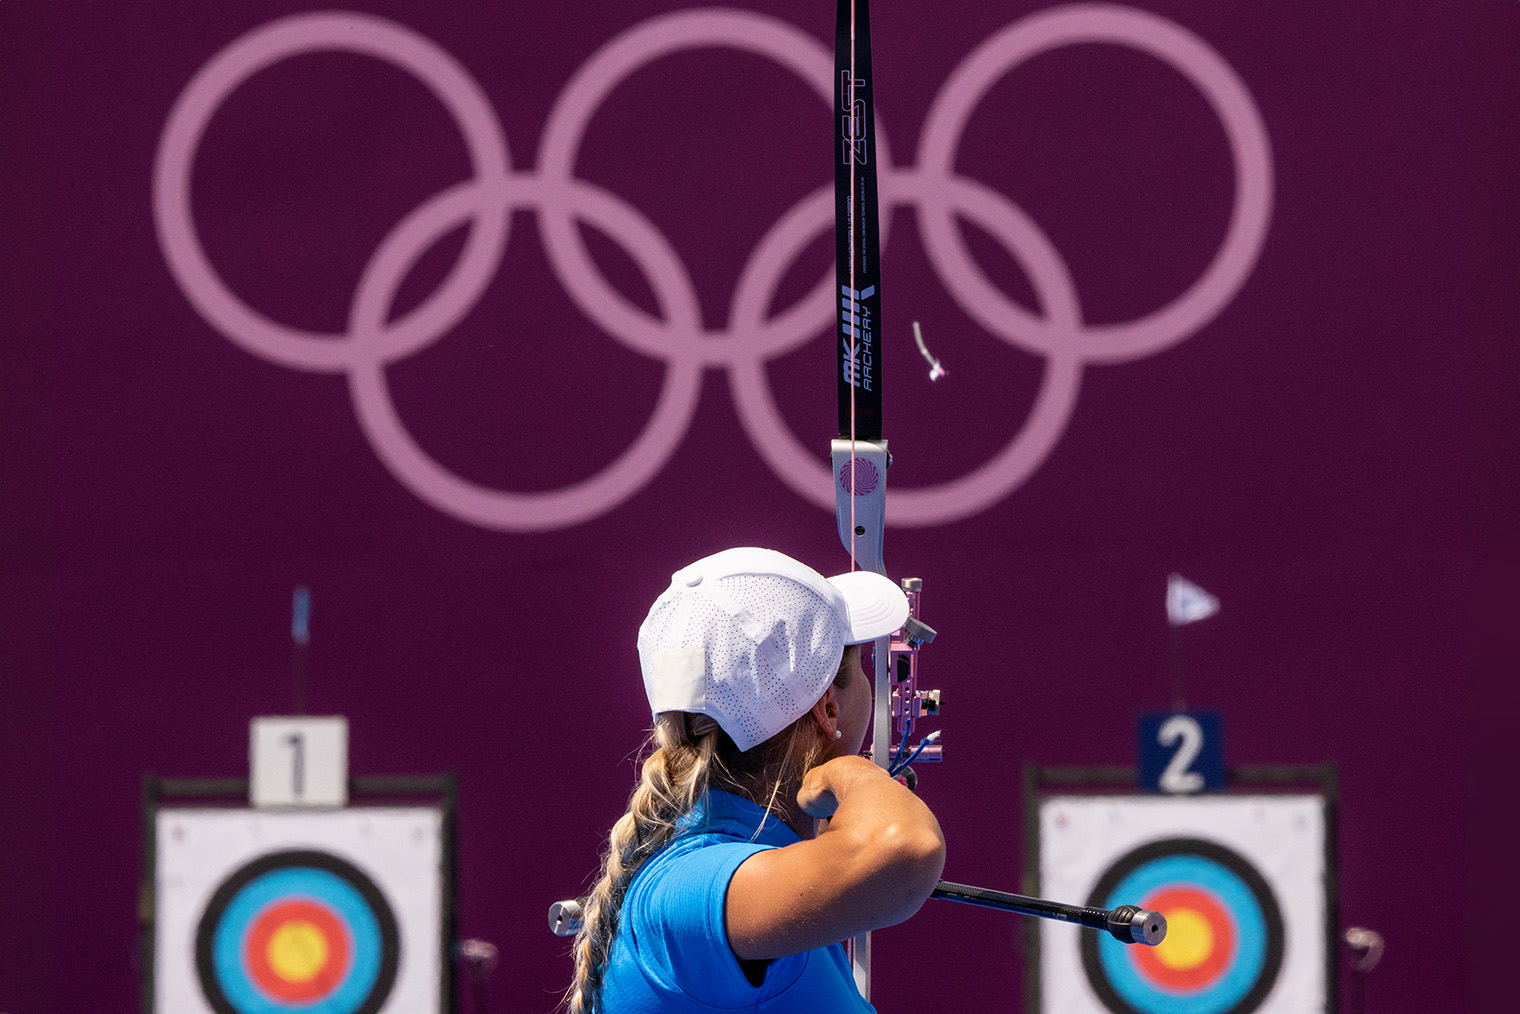 Рина Парнат из сборной Эстонии на Олимпиаде 2020 года в Токио. Фотография: Justin Setterfield / Getty Images